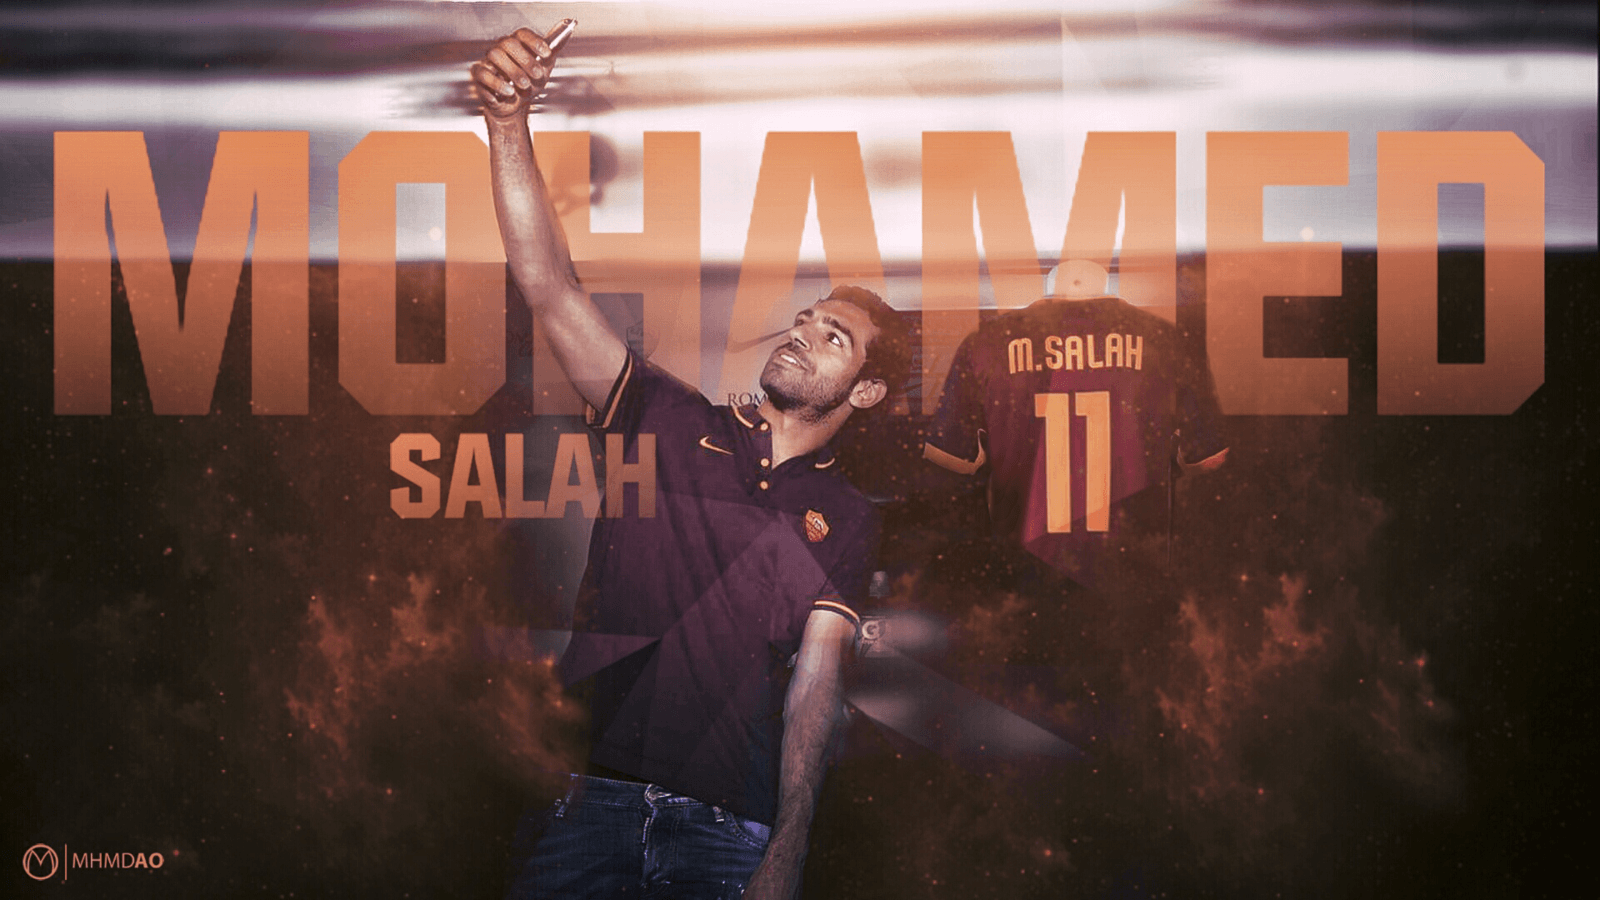 Mohamed Salah AS Roma Wallpaper